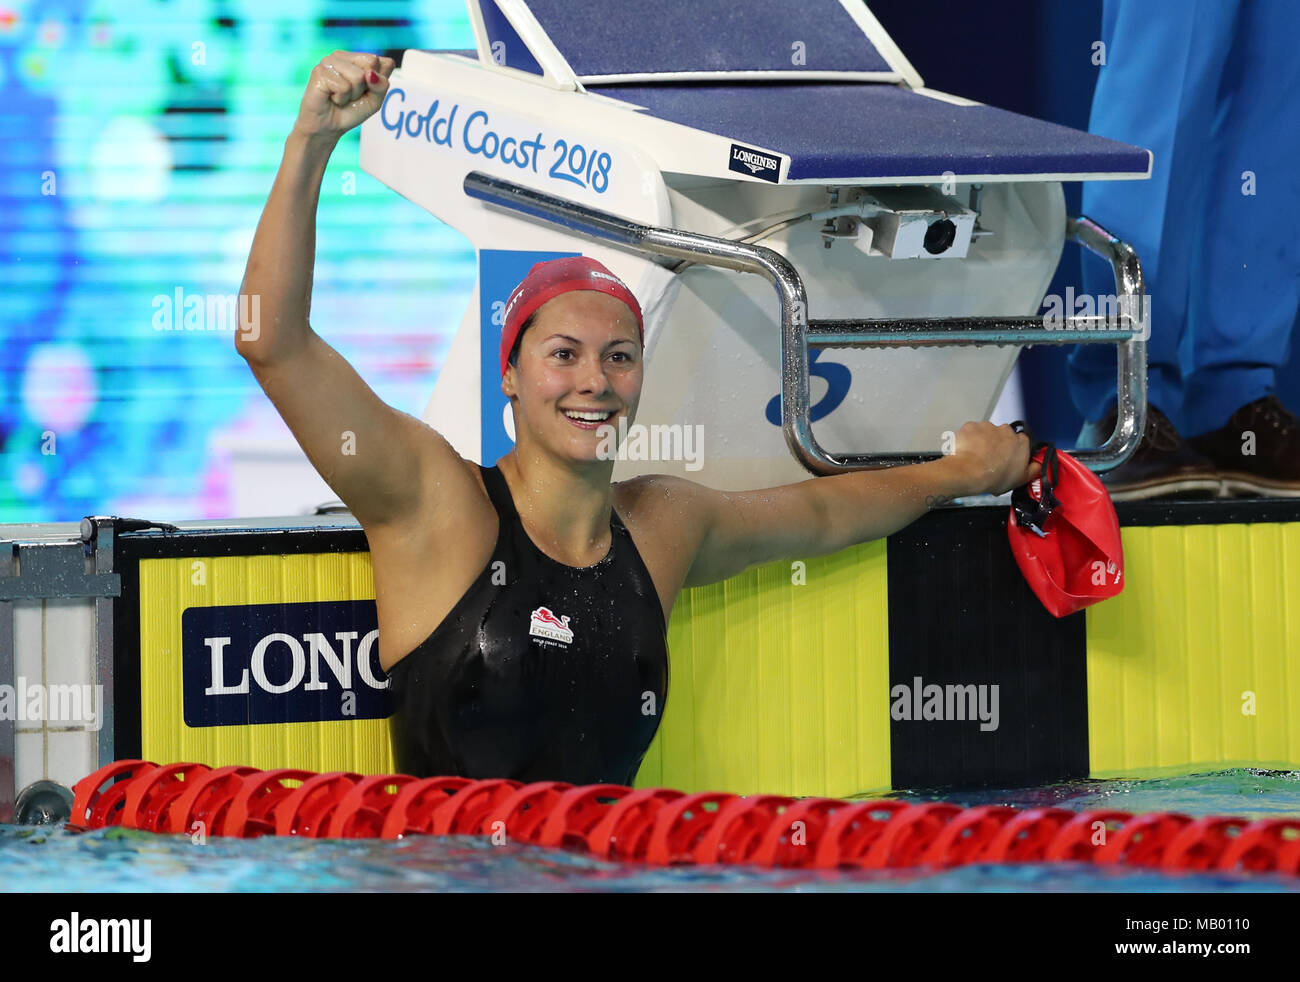 England's Aimee Willmott nach Gold gewinnen in 400 der Frauen m Individuelle Medley am Optus Aquatic Center während der Commonwealth Games 2018 in der Gold Coast, Australien. Stockfoto